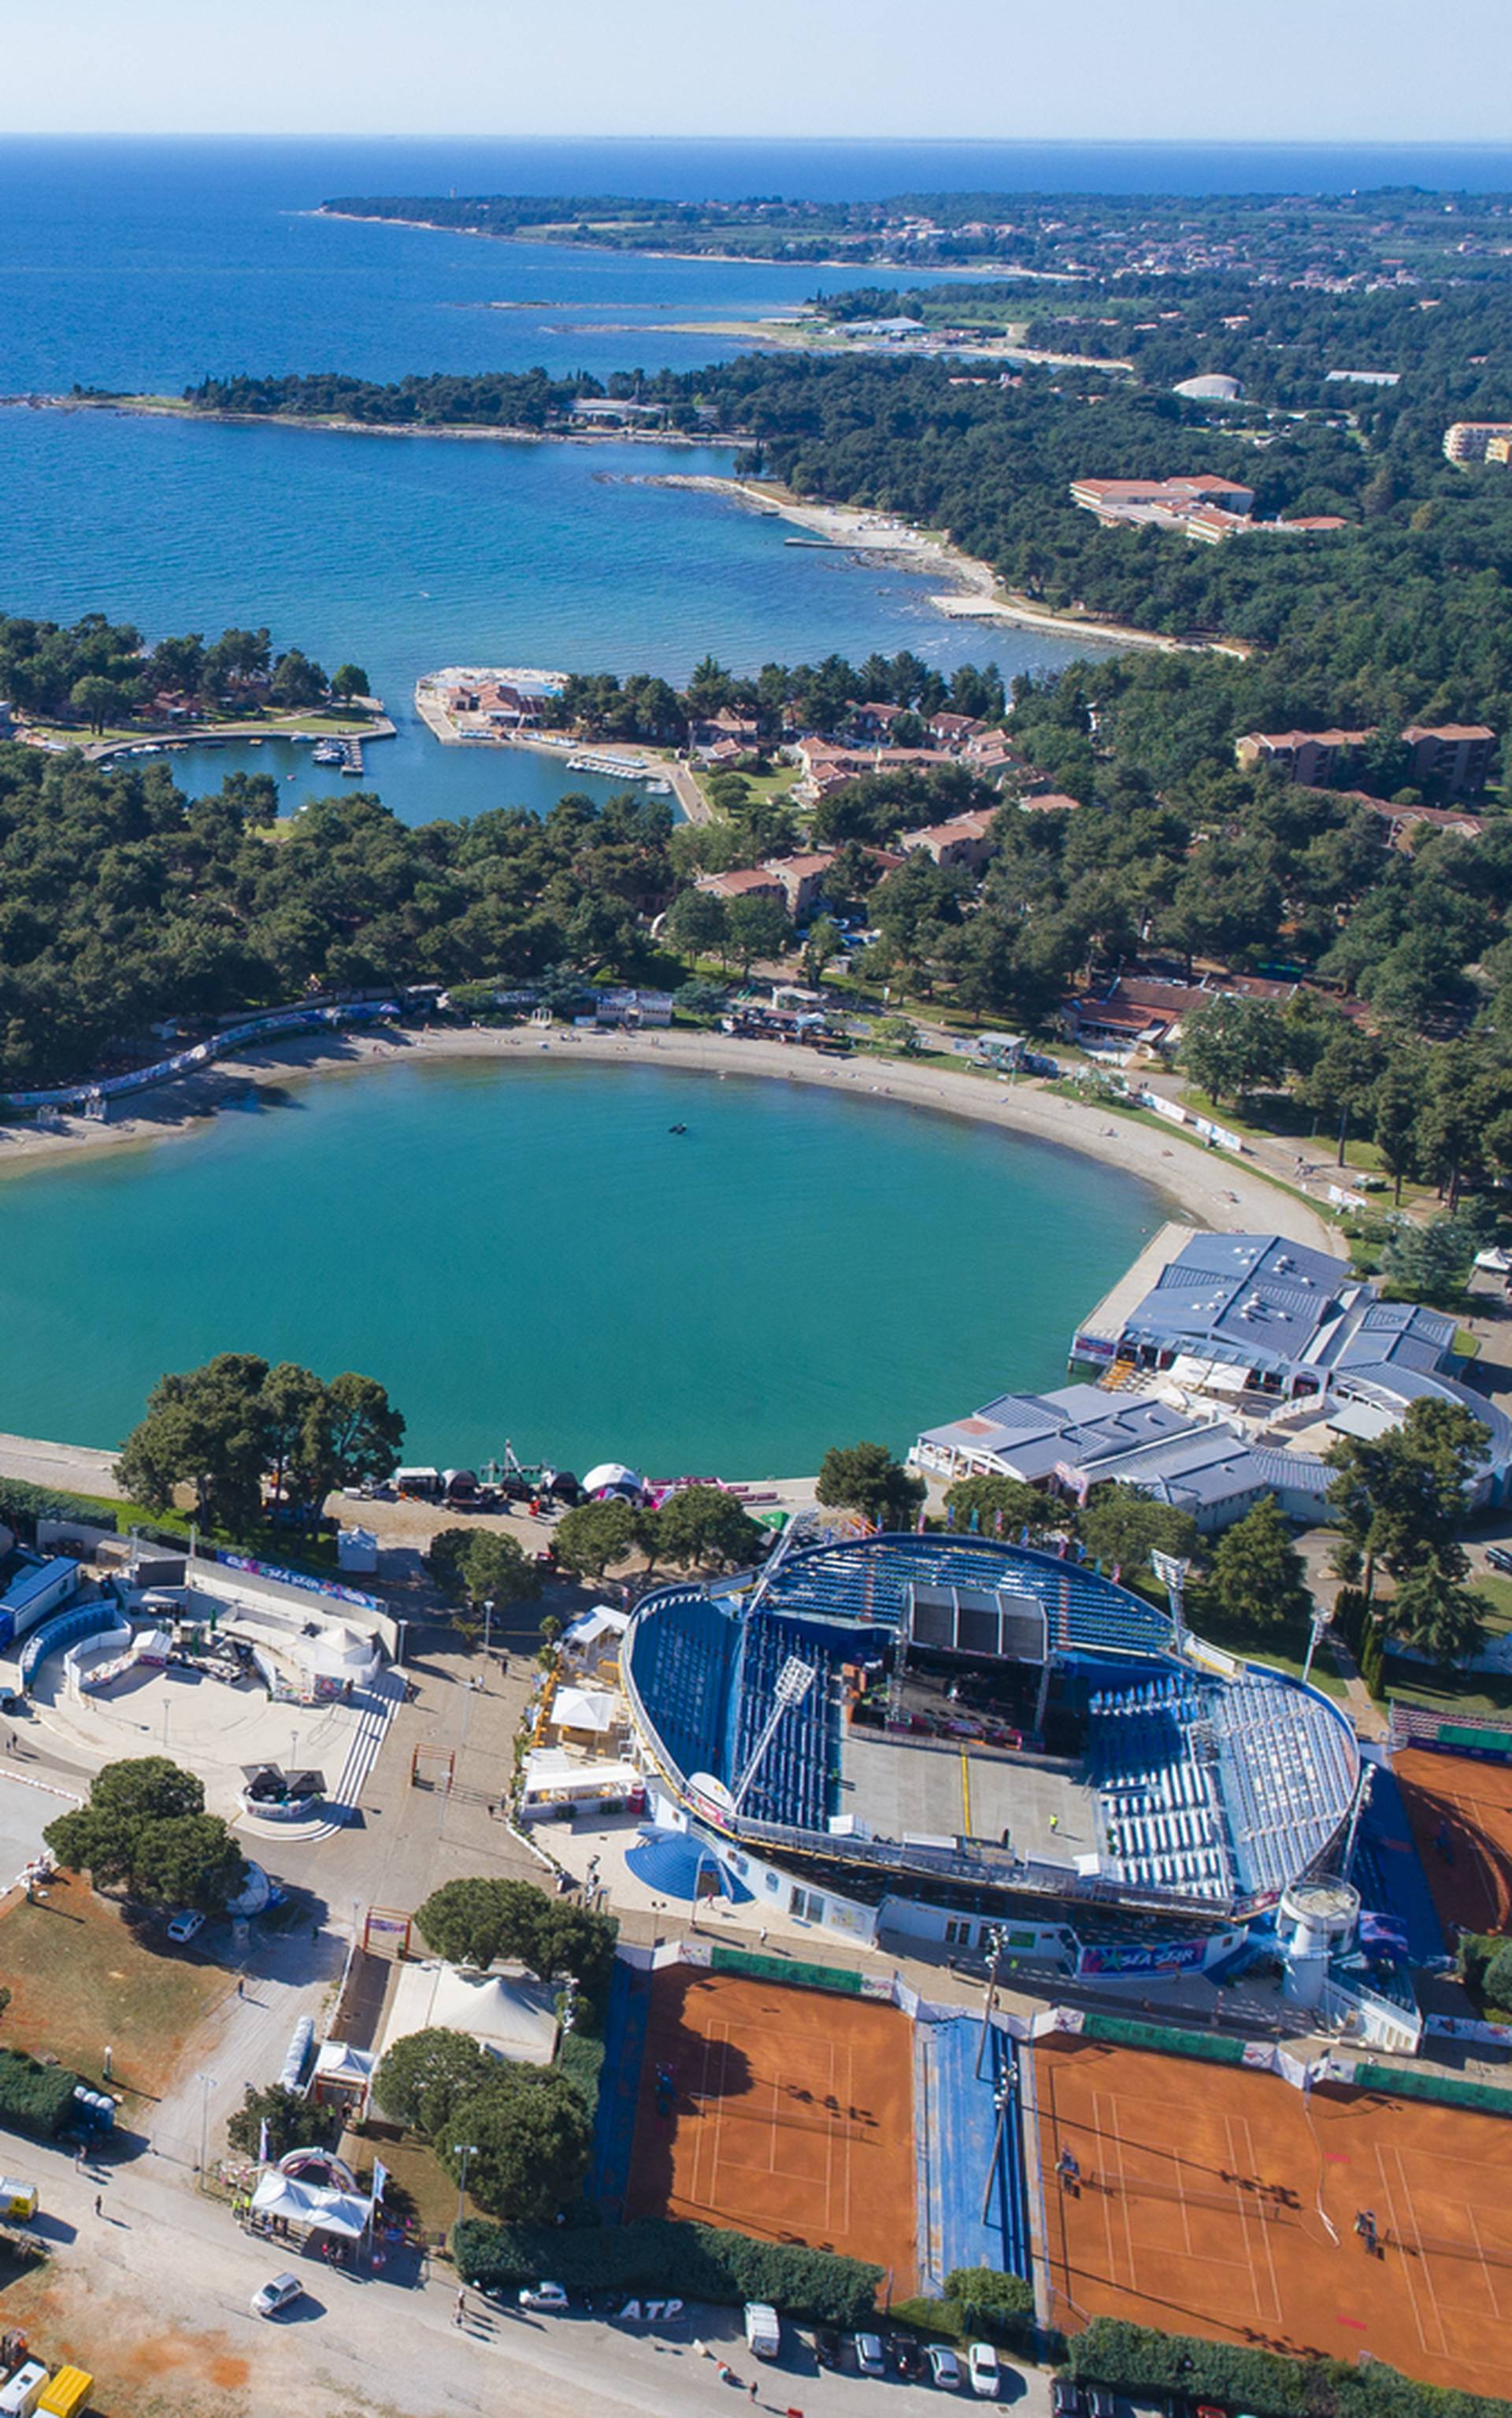 Svi izvođači i gosti Sea Stara fascinirani su ljepotama Istre